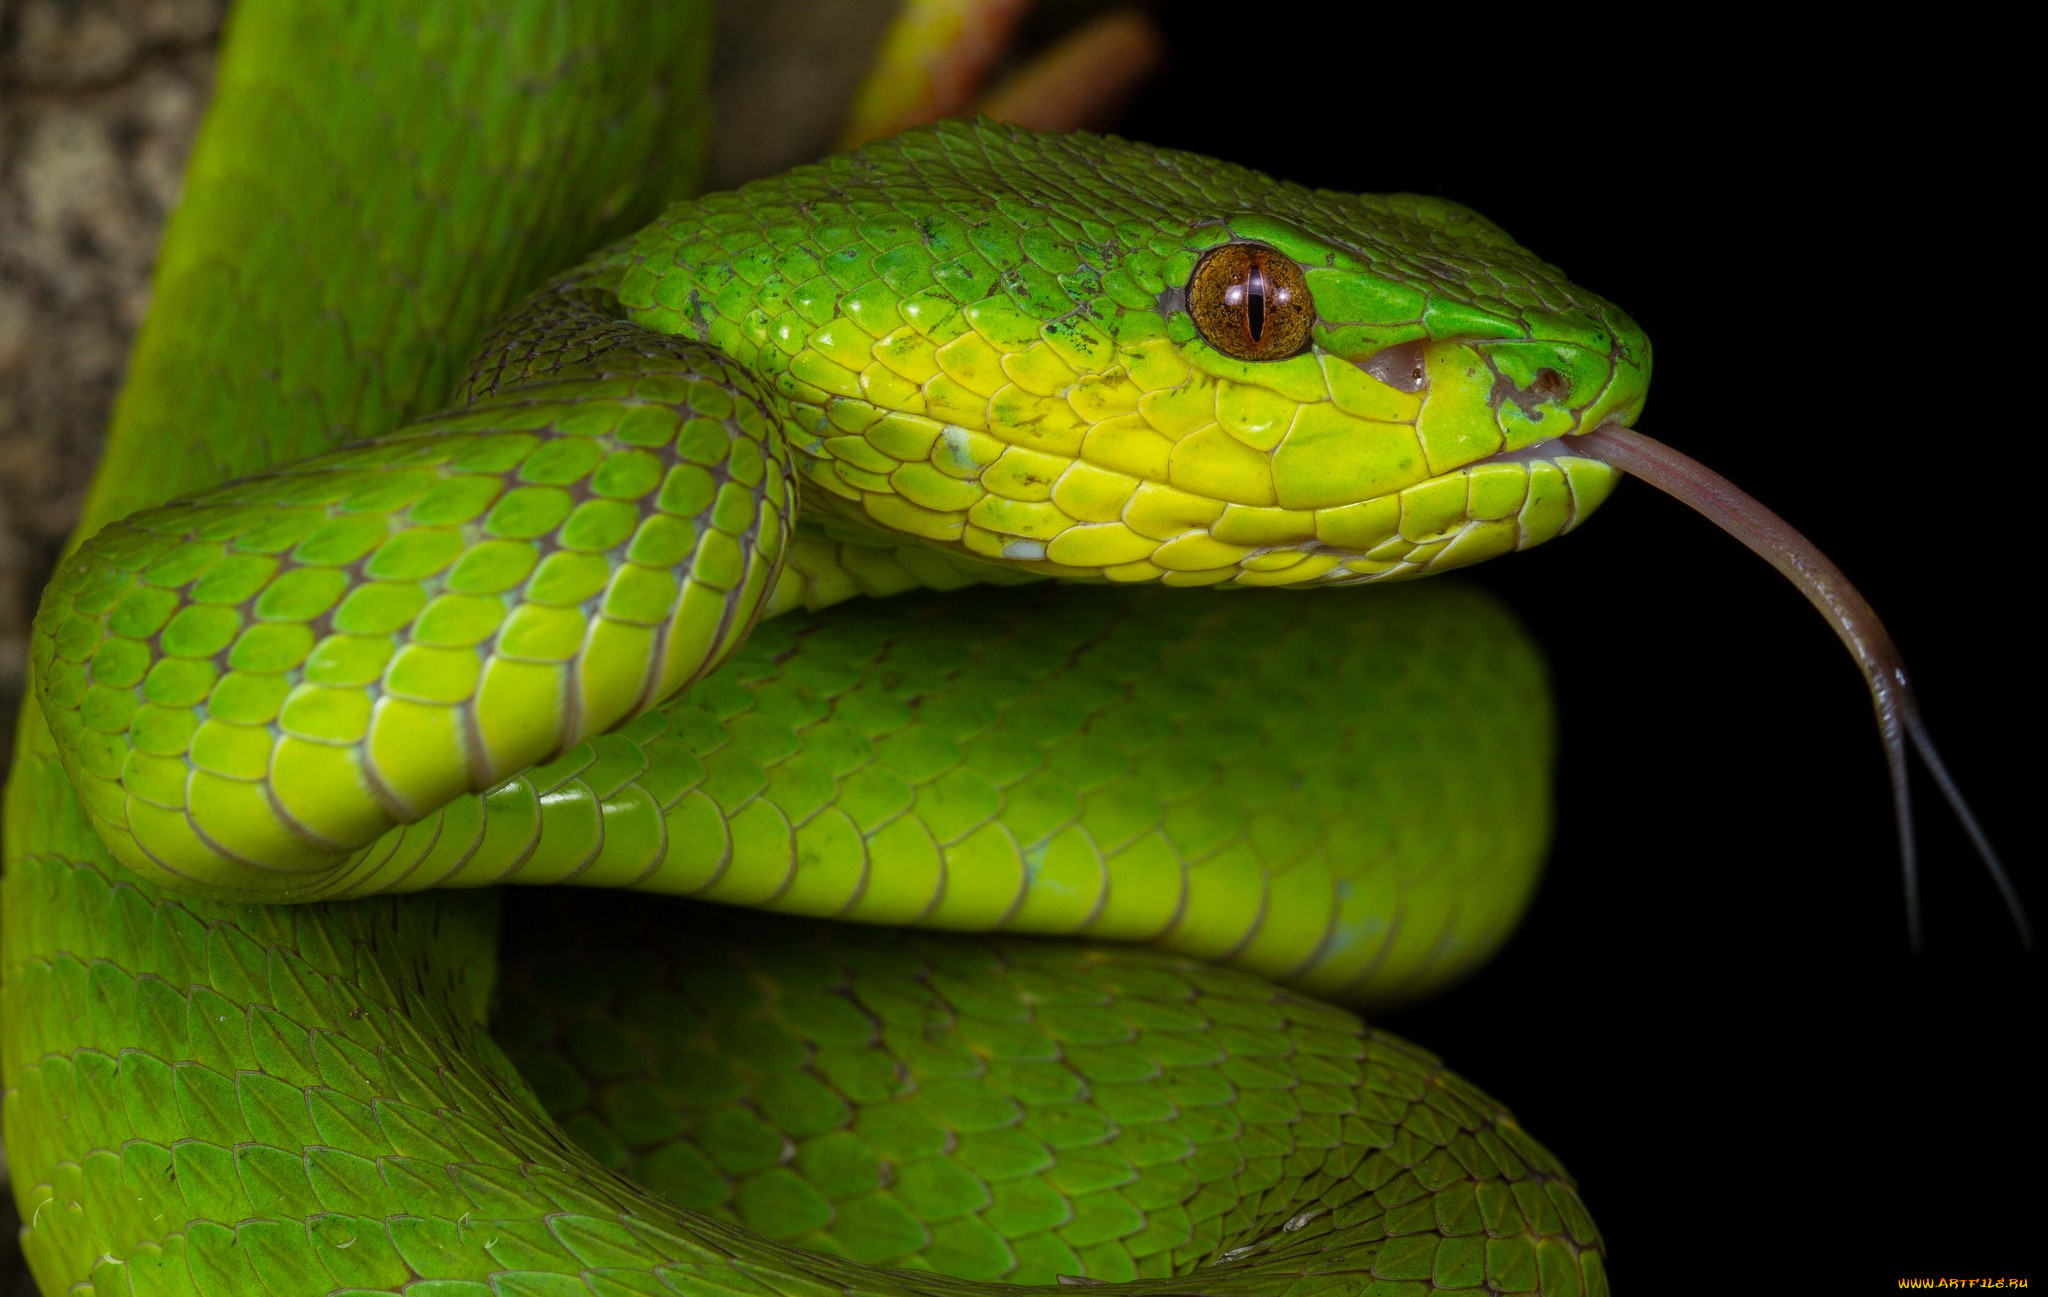 Куфия инсулярис. Trimeresurus insularis. Зеленая змея. Желто зеленая змея. Слушать про змею